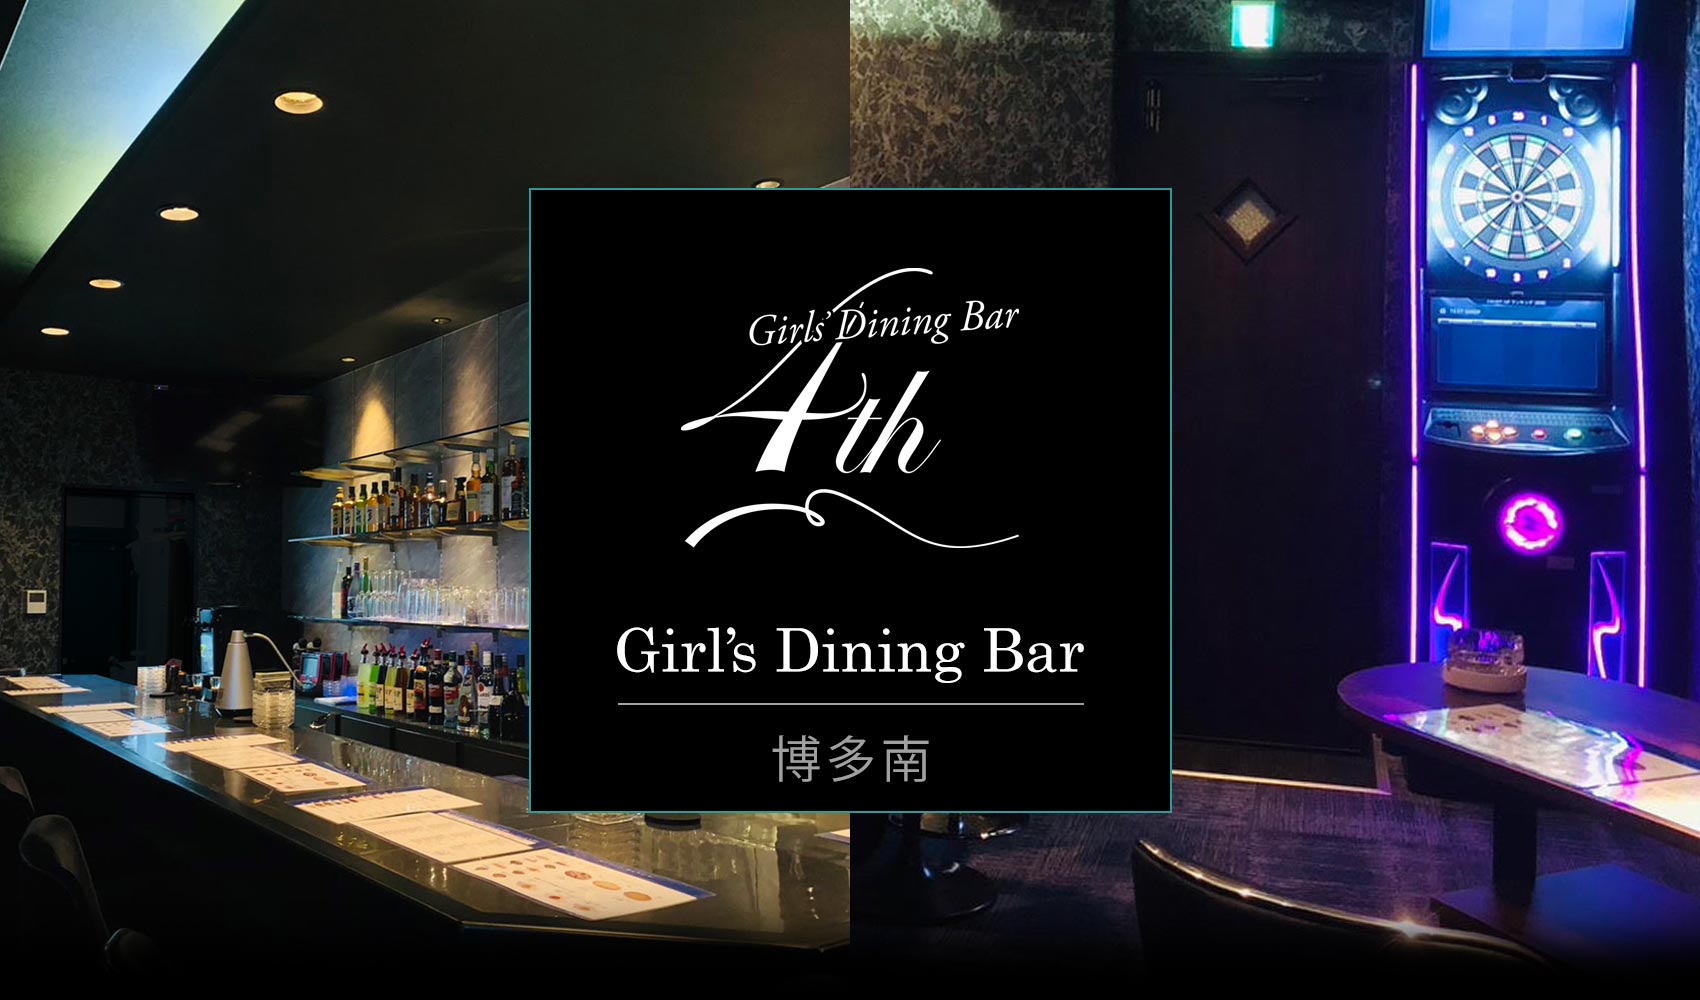 福岡県那珂川市のGirl’s Dining Bar 4th alpha（ガールズダイニングバー・フォース博多南）